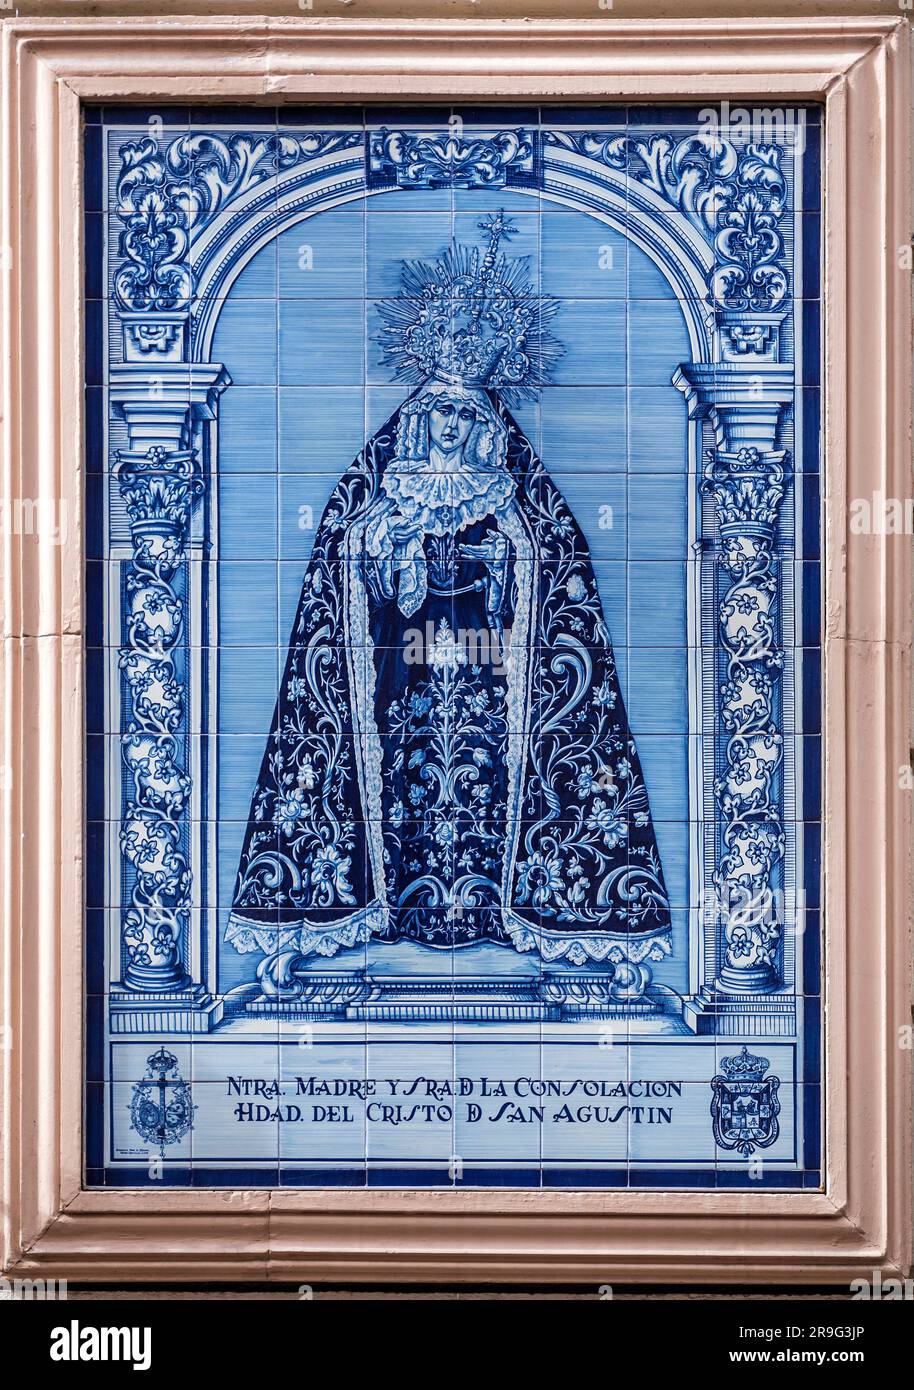 Granada, Spagna - 26 febbraio 2022: Raffigurazione religiosa della Vergine Maria su un affresco in piastrelle di ceramica in una strada di Granada. Foto Stock